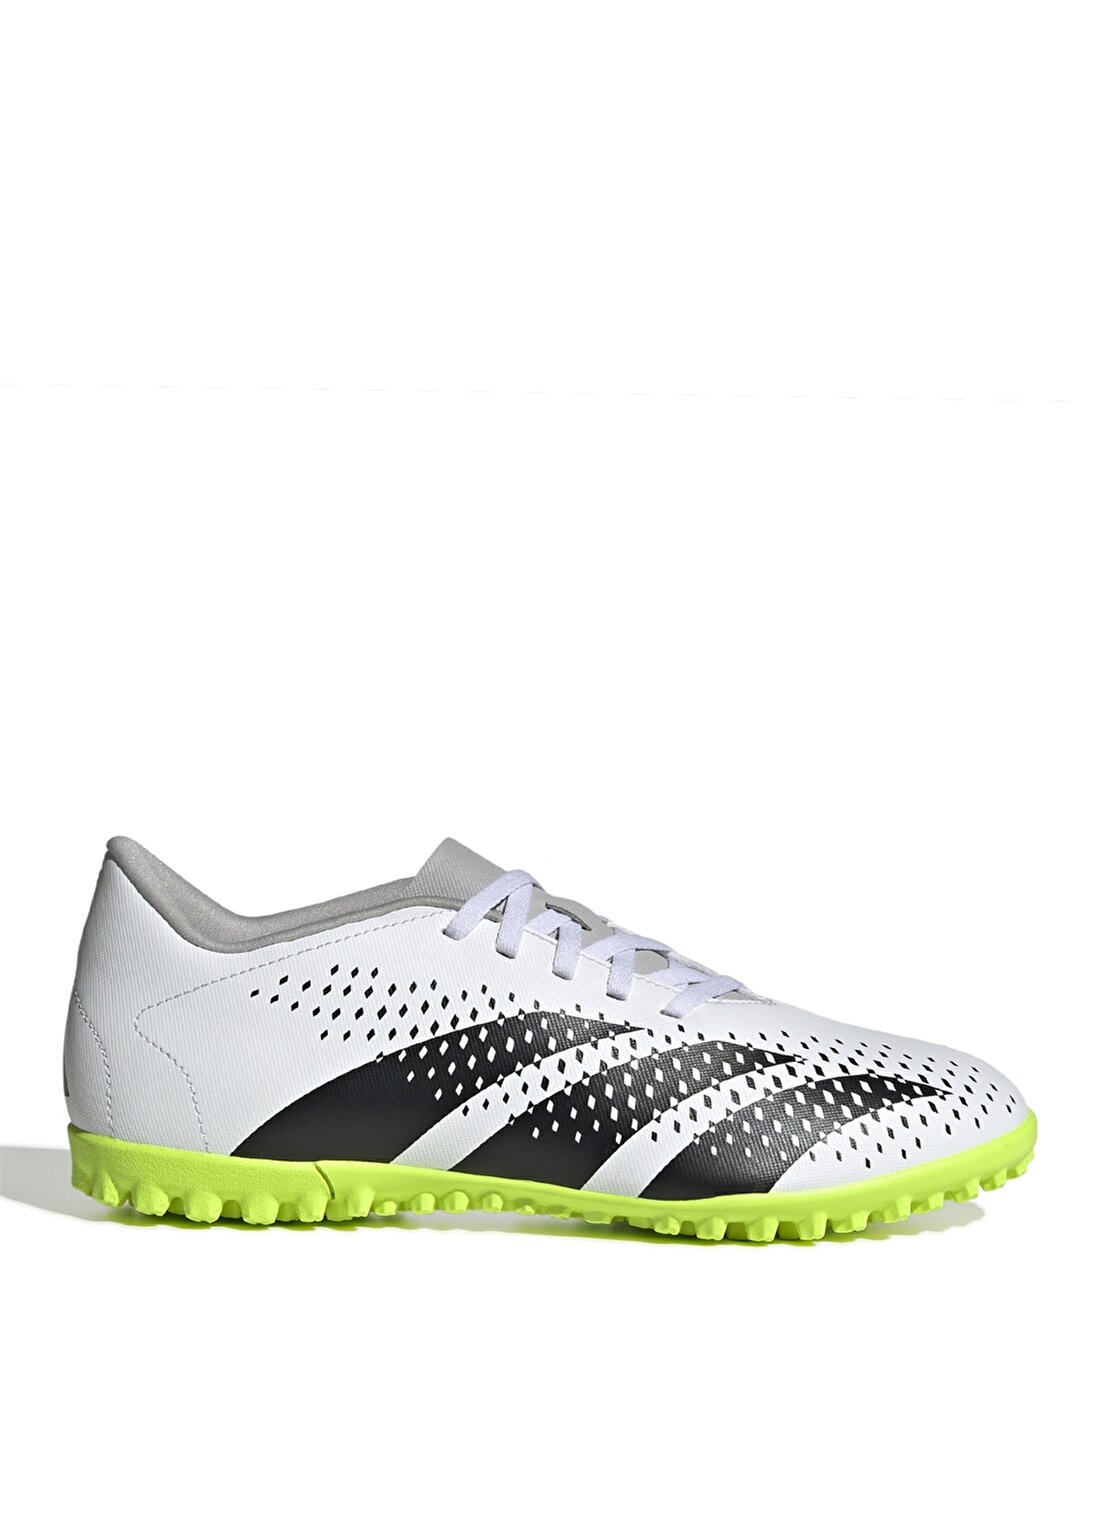 Adidas Beyaz Erkek Futbol Ayakkabısı GY9995-PREDATOR ACCURACY.4 FTW